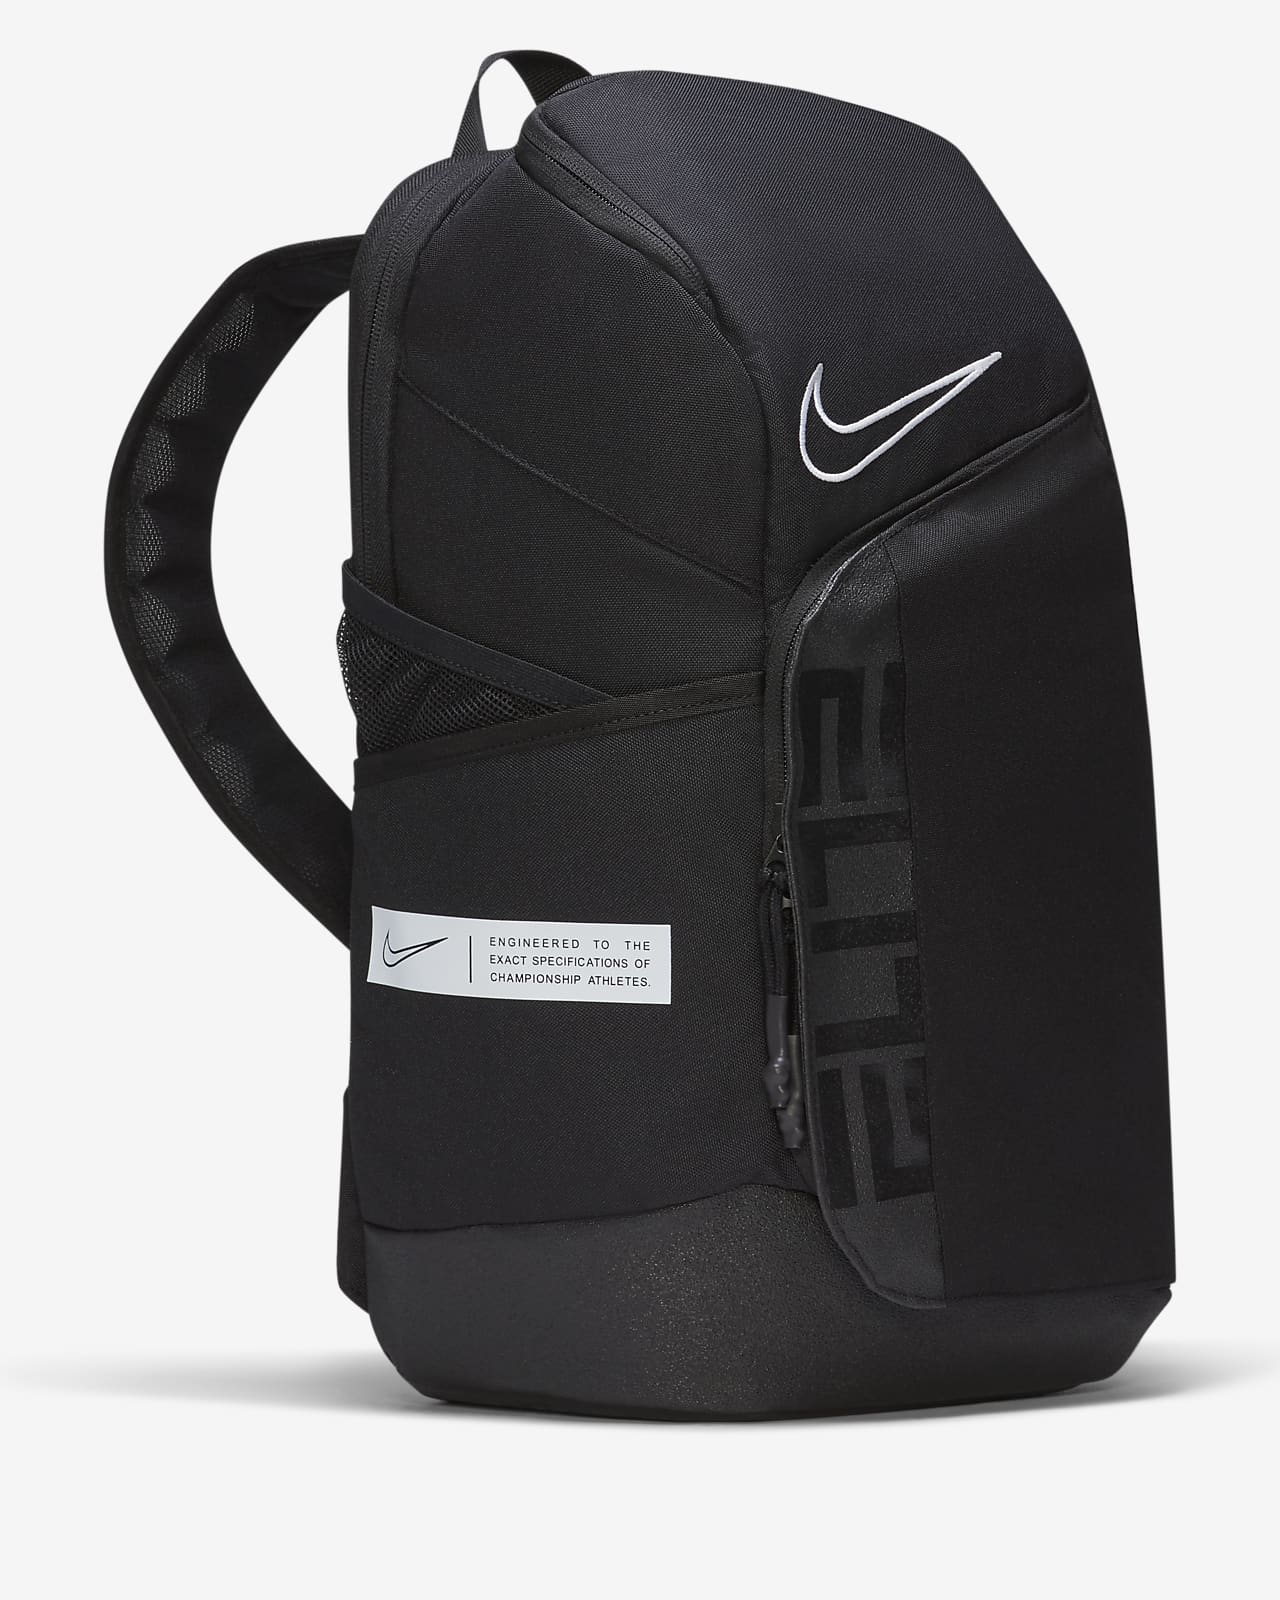 Leyes y regulaciones Buque de guerra excusa Nike Elite Pro Small Basketball Backpack (23L). Nike JP